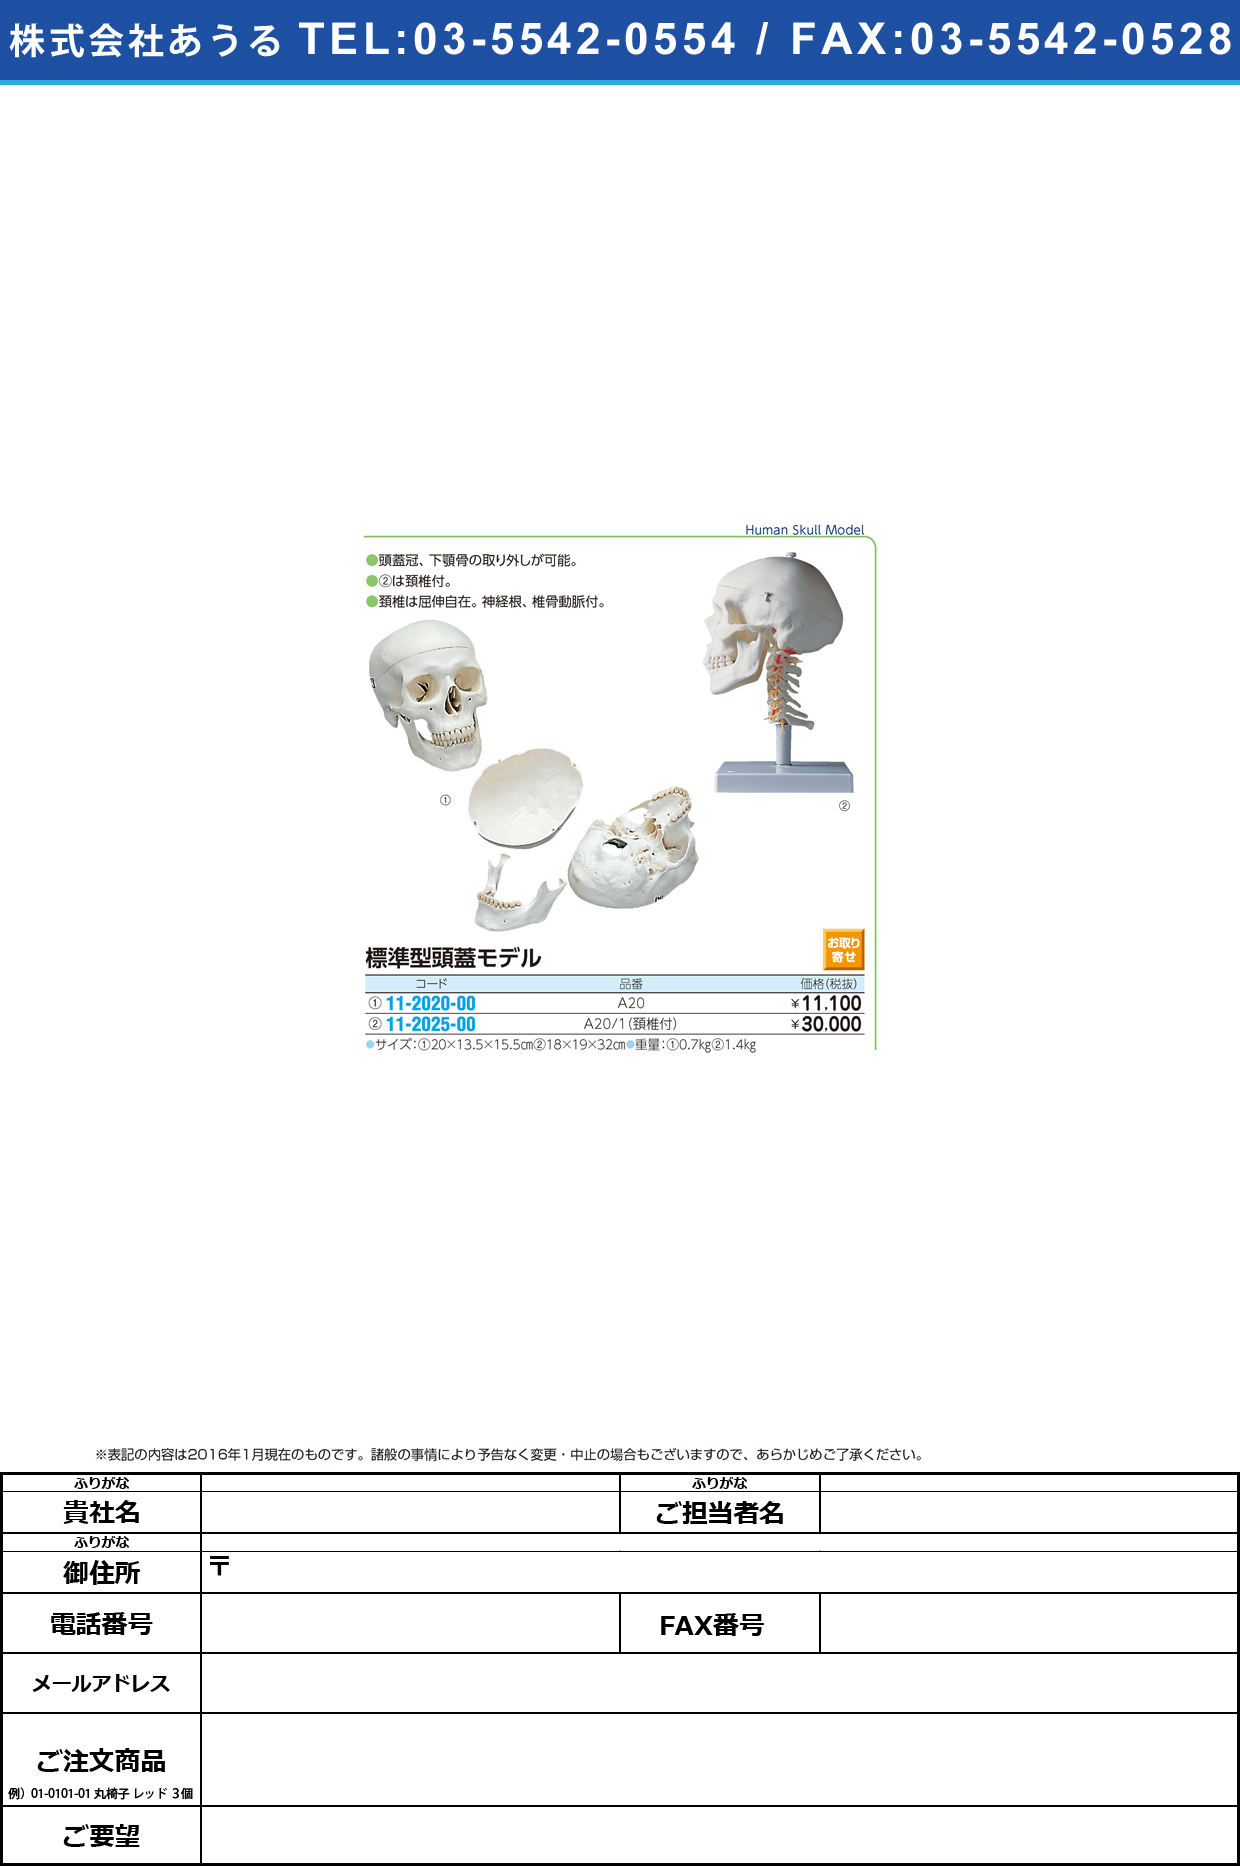 (11-2020-00)標準型頭蓋モデル ｽﾞｶﾞｲﾓﾃﾞﾙ A20 (20X13.5X15.5CM)【1台単位】【2016年カタログ商品】